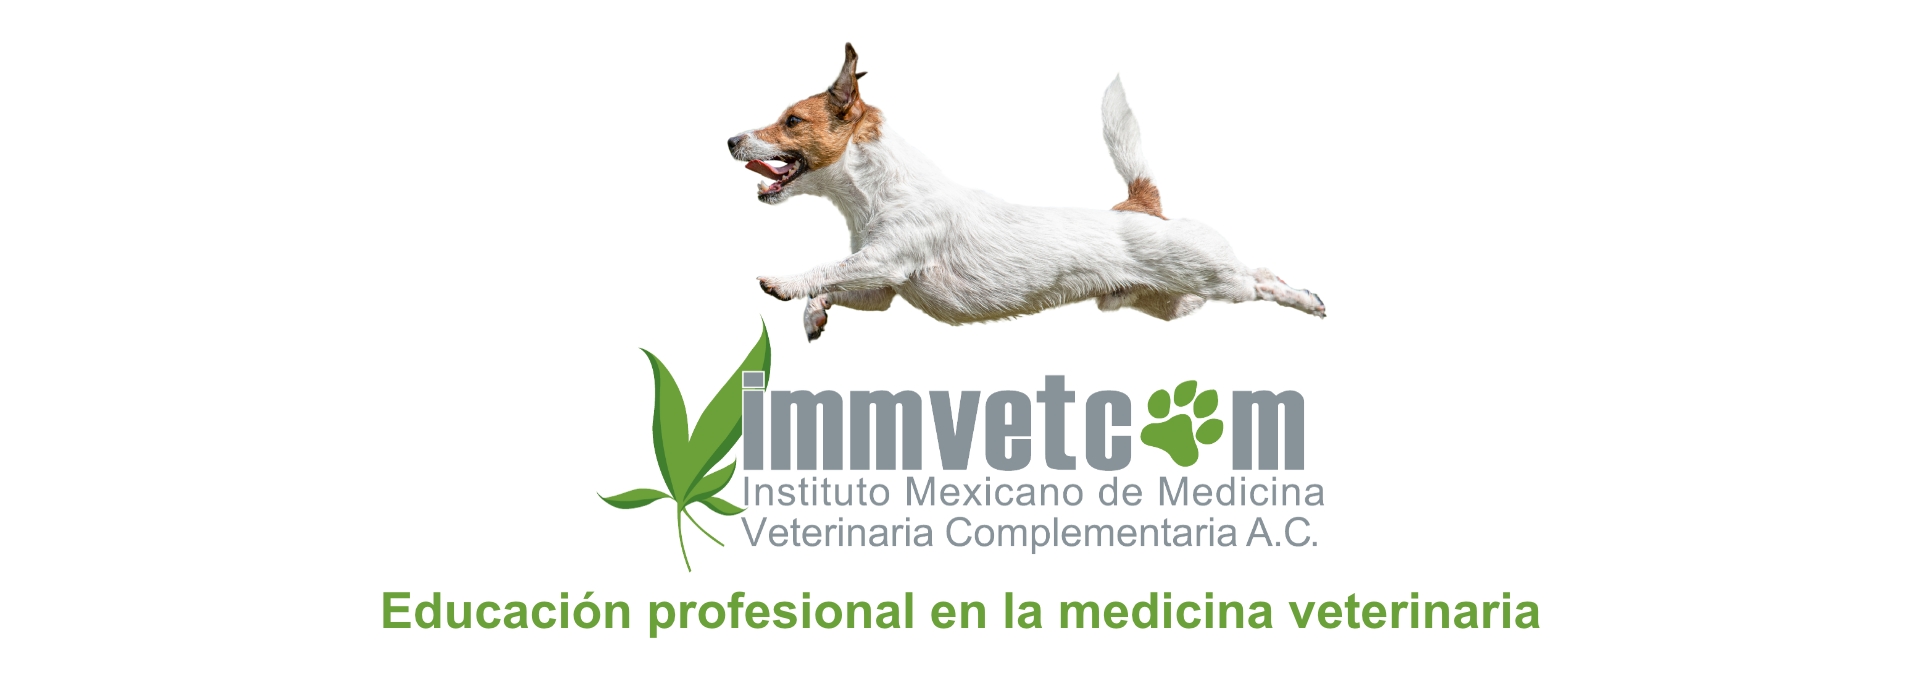 Educación profesional en la medicina veterinaria